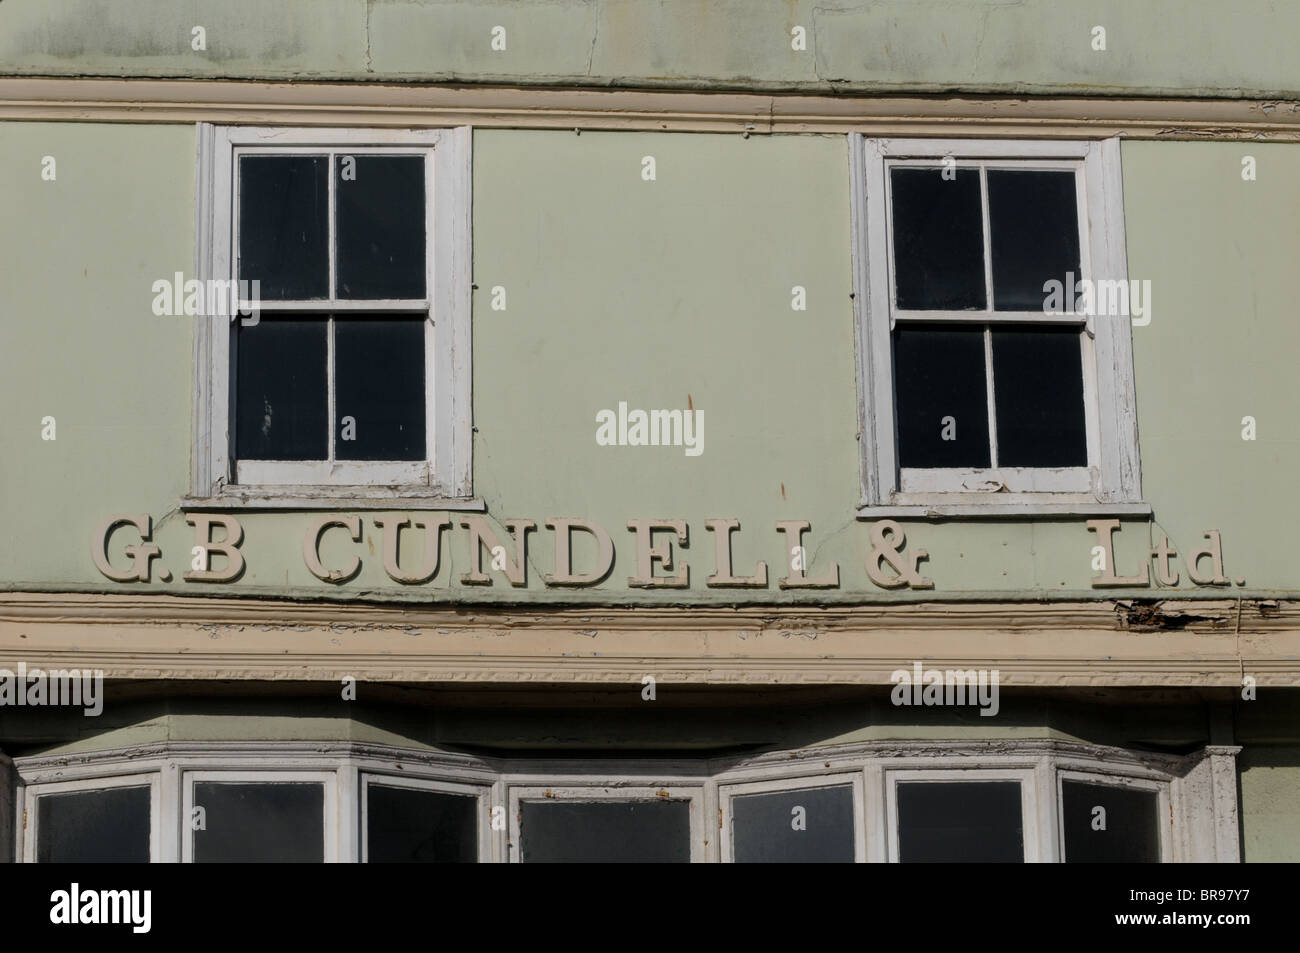 Ungepflegten alten Ladenschild für Bäcker Cundells in Dartmouth auf dem Kai nach der Shop geschlossen Stockfoto